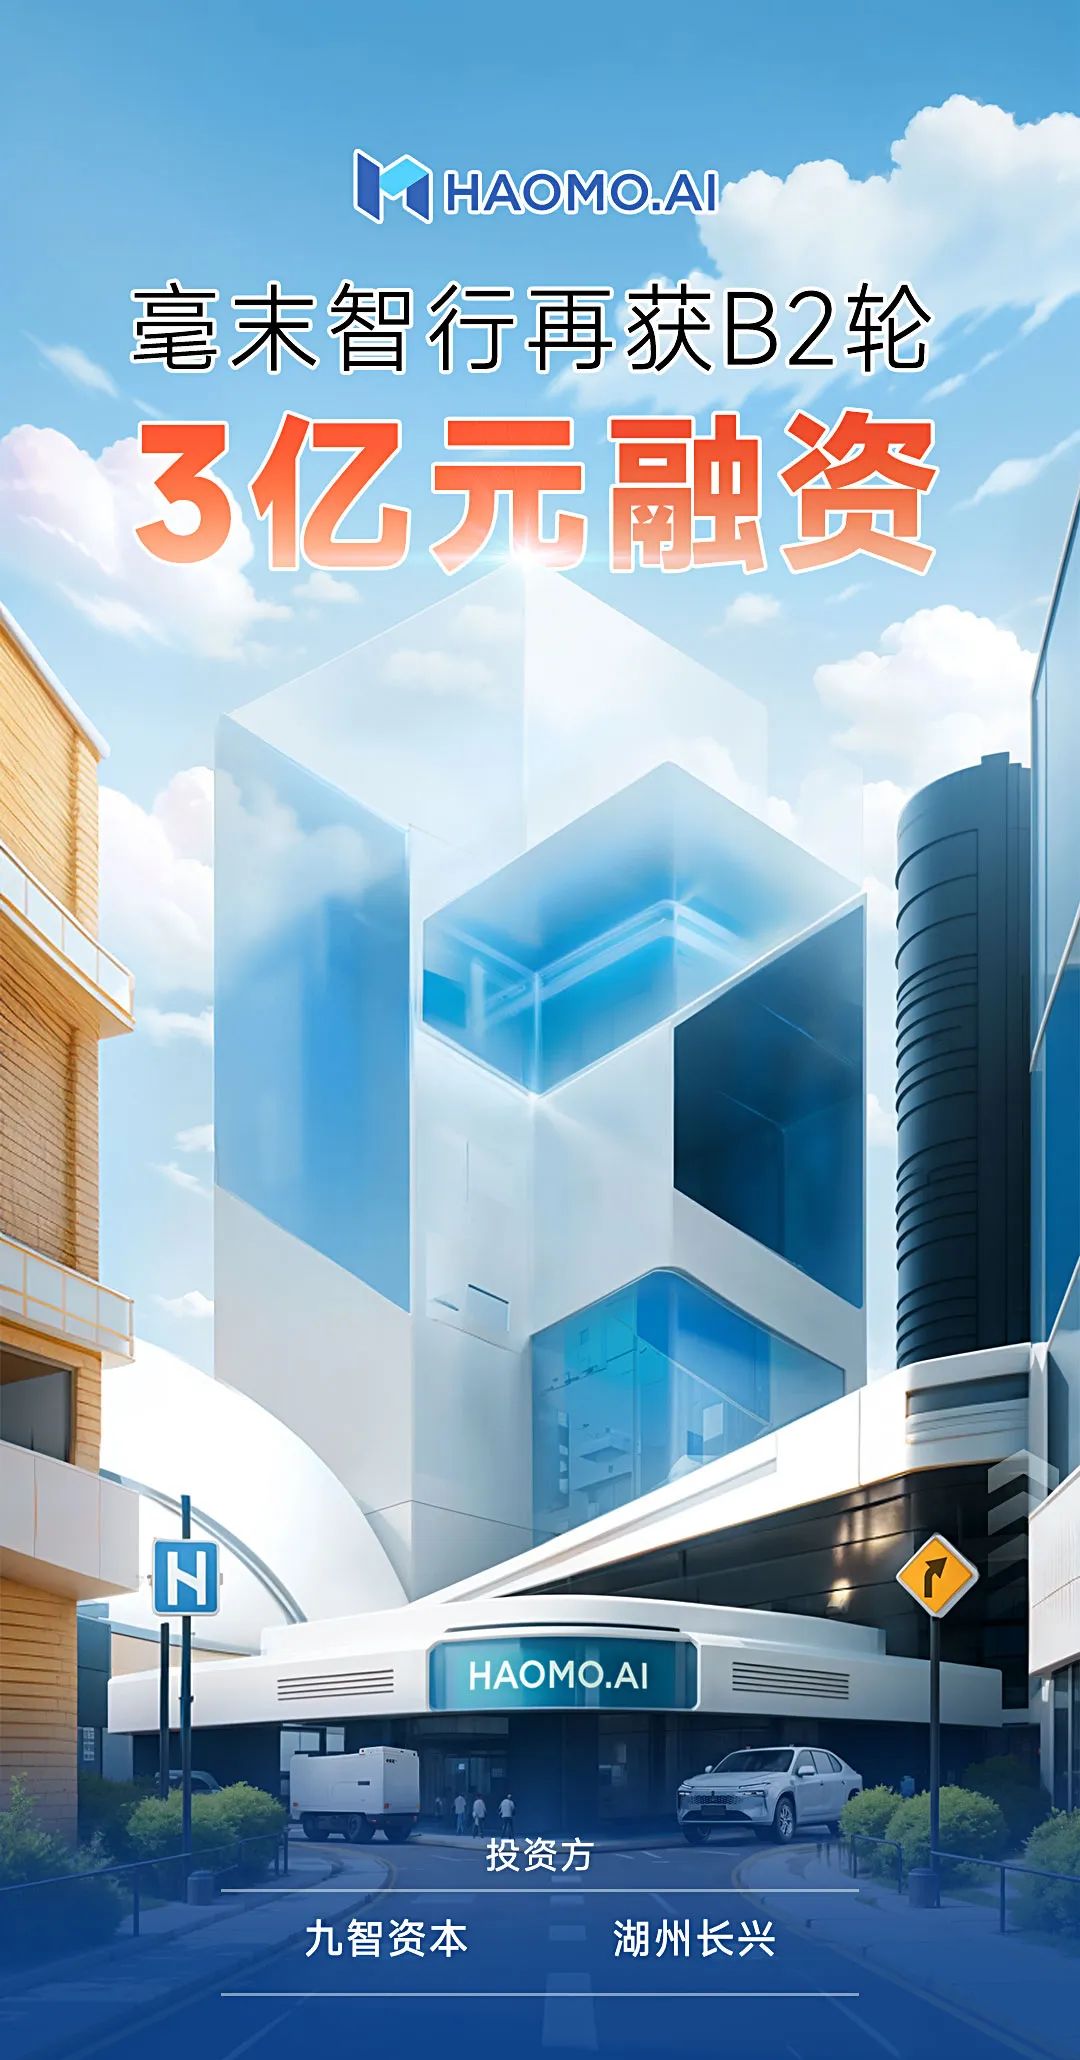 Hao Mo Zhixingは、Jiuzhi CapitalとHuzhou ChangxingからシリーズB2資金調達で3億元を受け取りました。